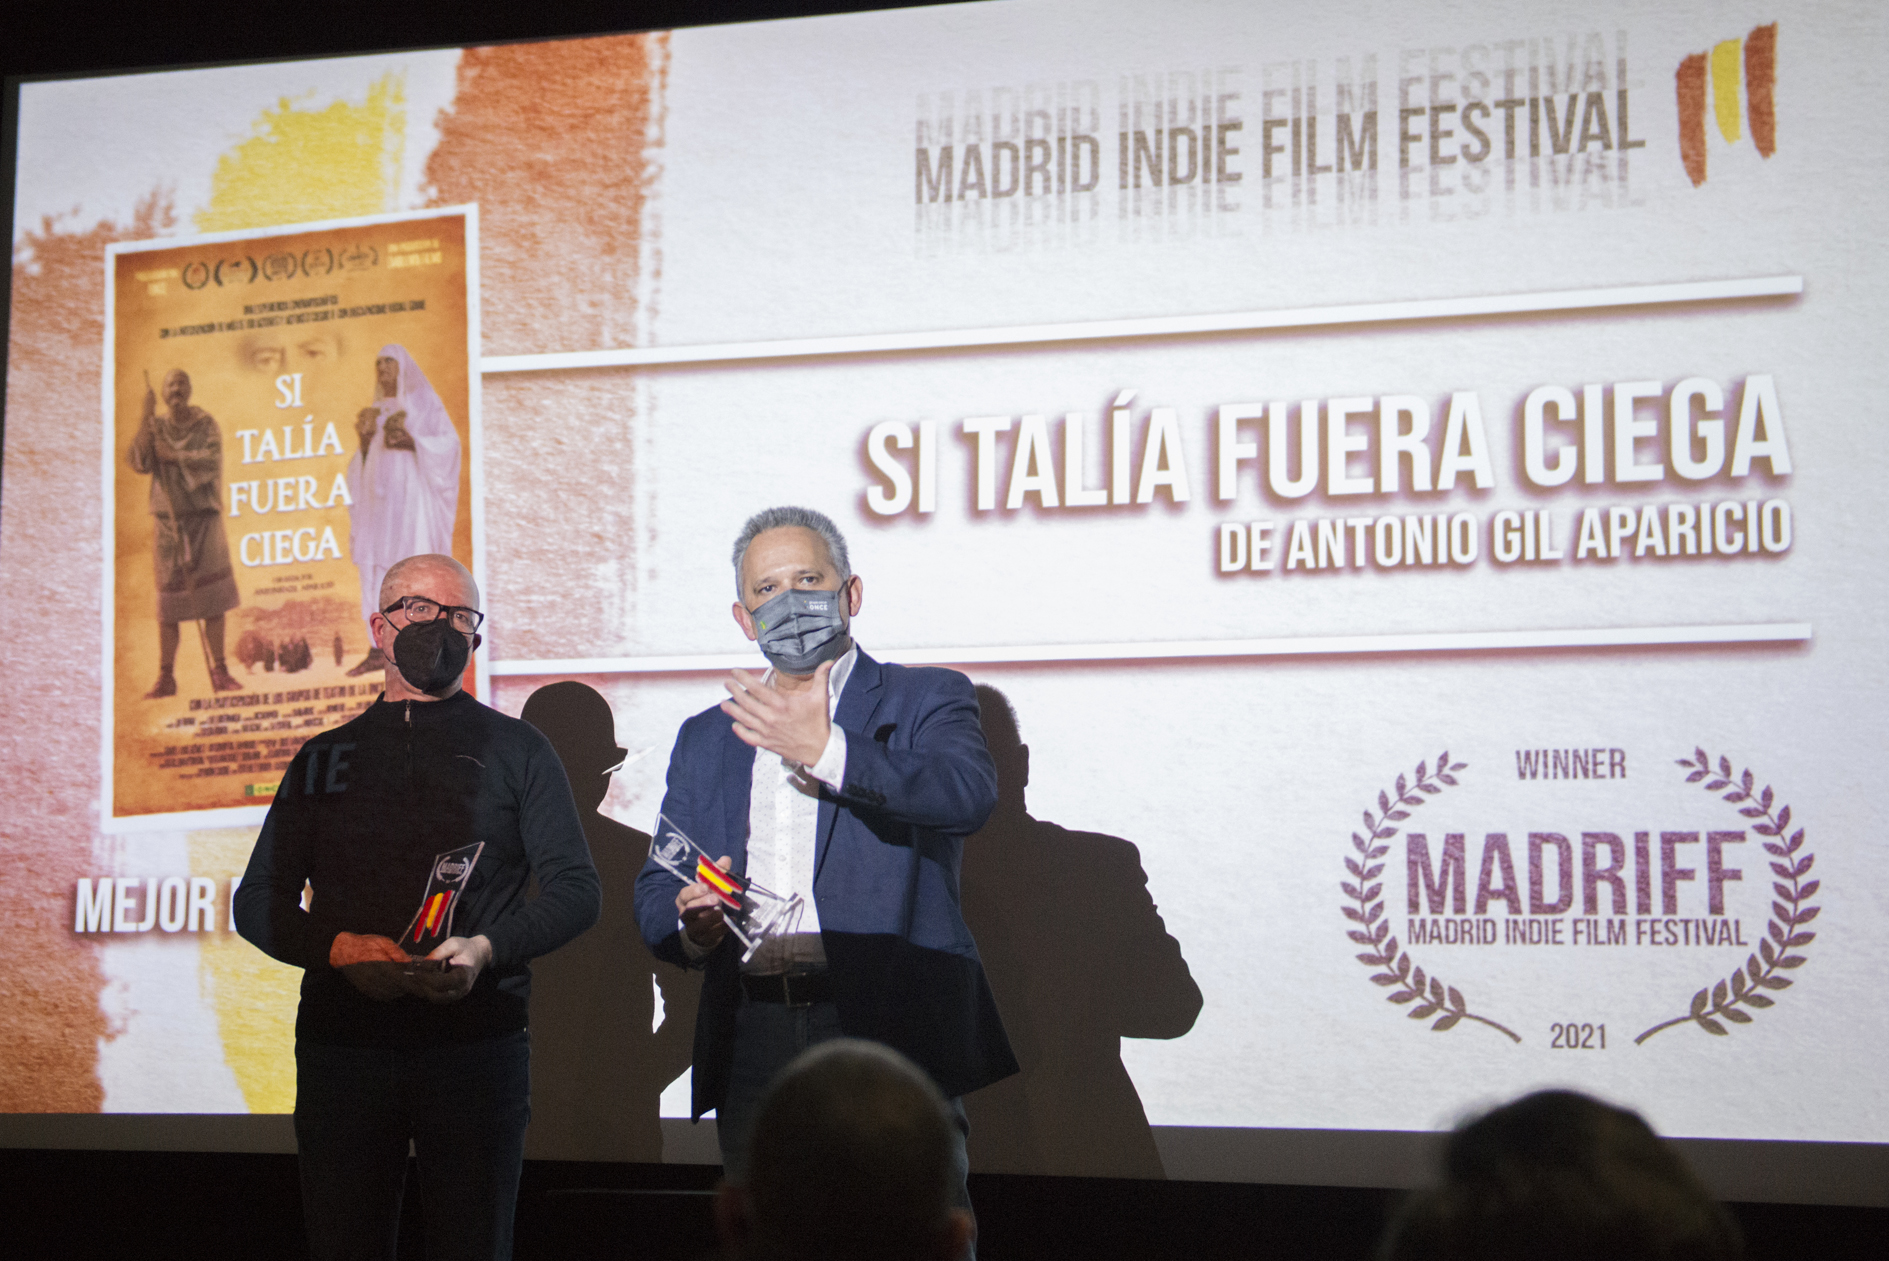 La película de producción extremeña, SI TALÍA FUERA CIEGA es galardonada con el premio a MEJOR MEDIOMETRAJE 2021 en el Madrid Indi Film Festival.